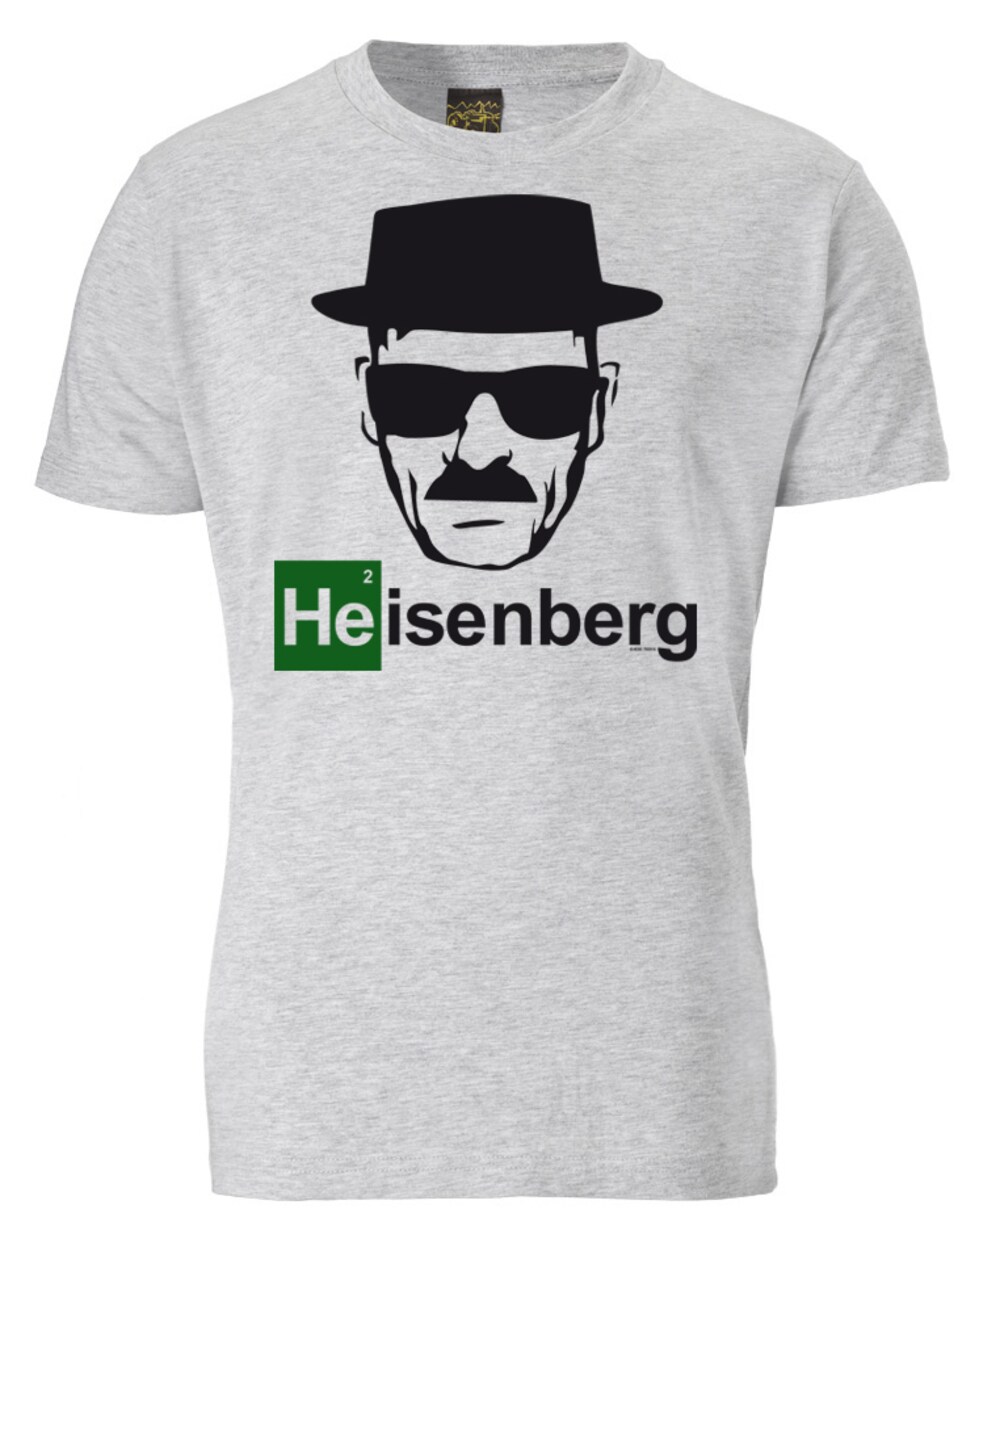 Футболка Logoshirt Heisenberg, серый